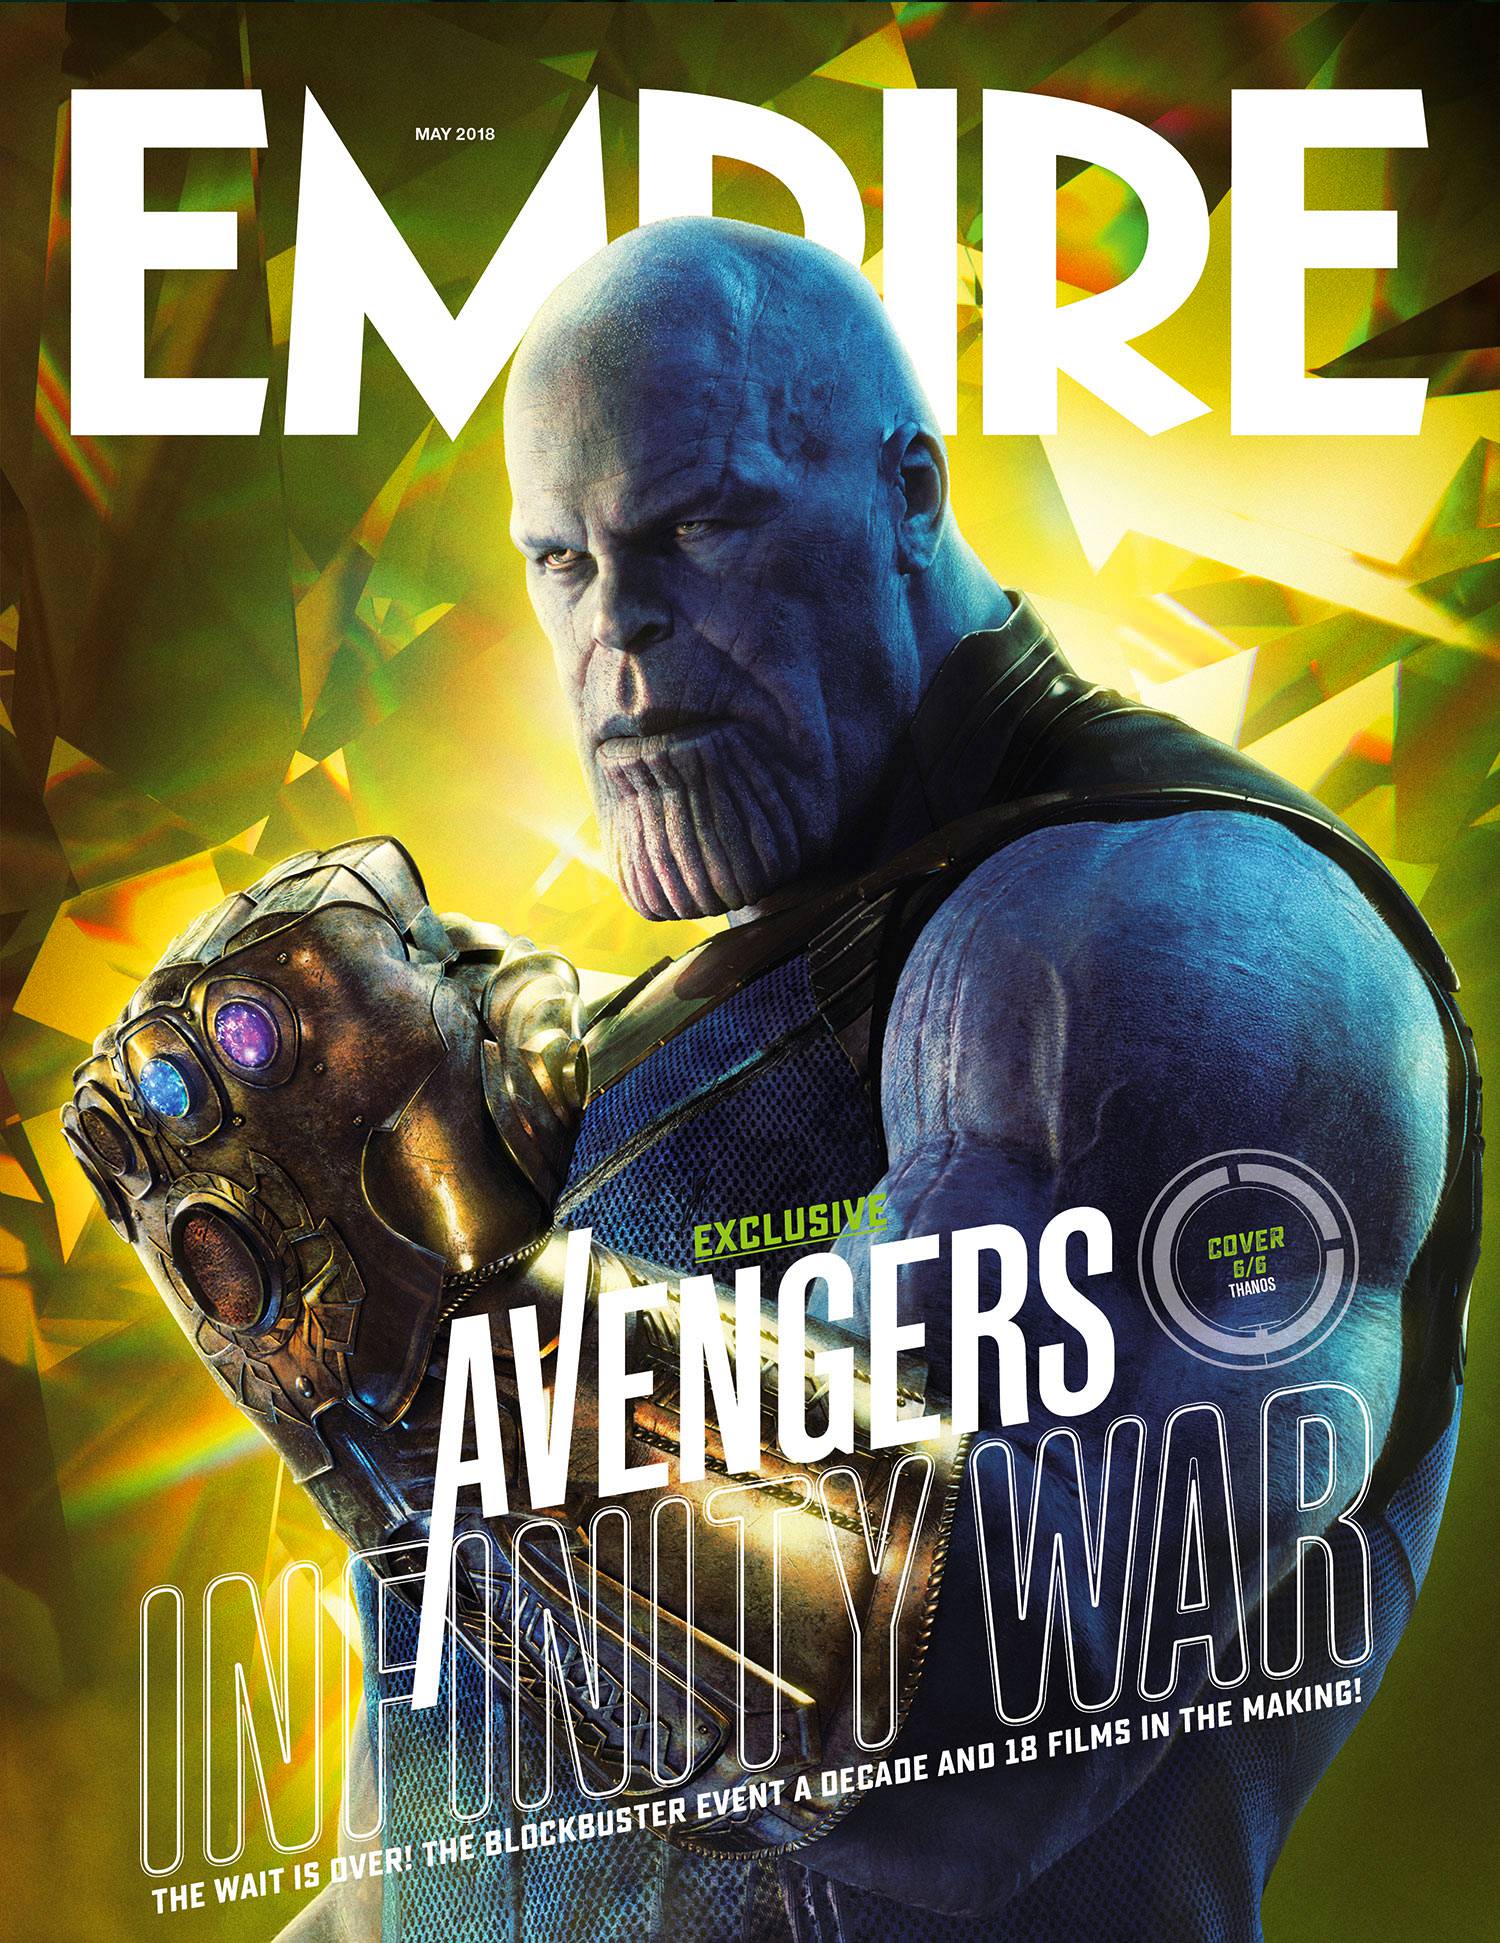 Avengers: elenco de Infinity War exhibido en nuevas portadas de revistas Empire